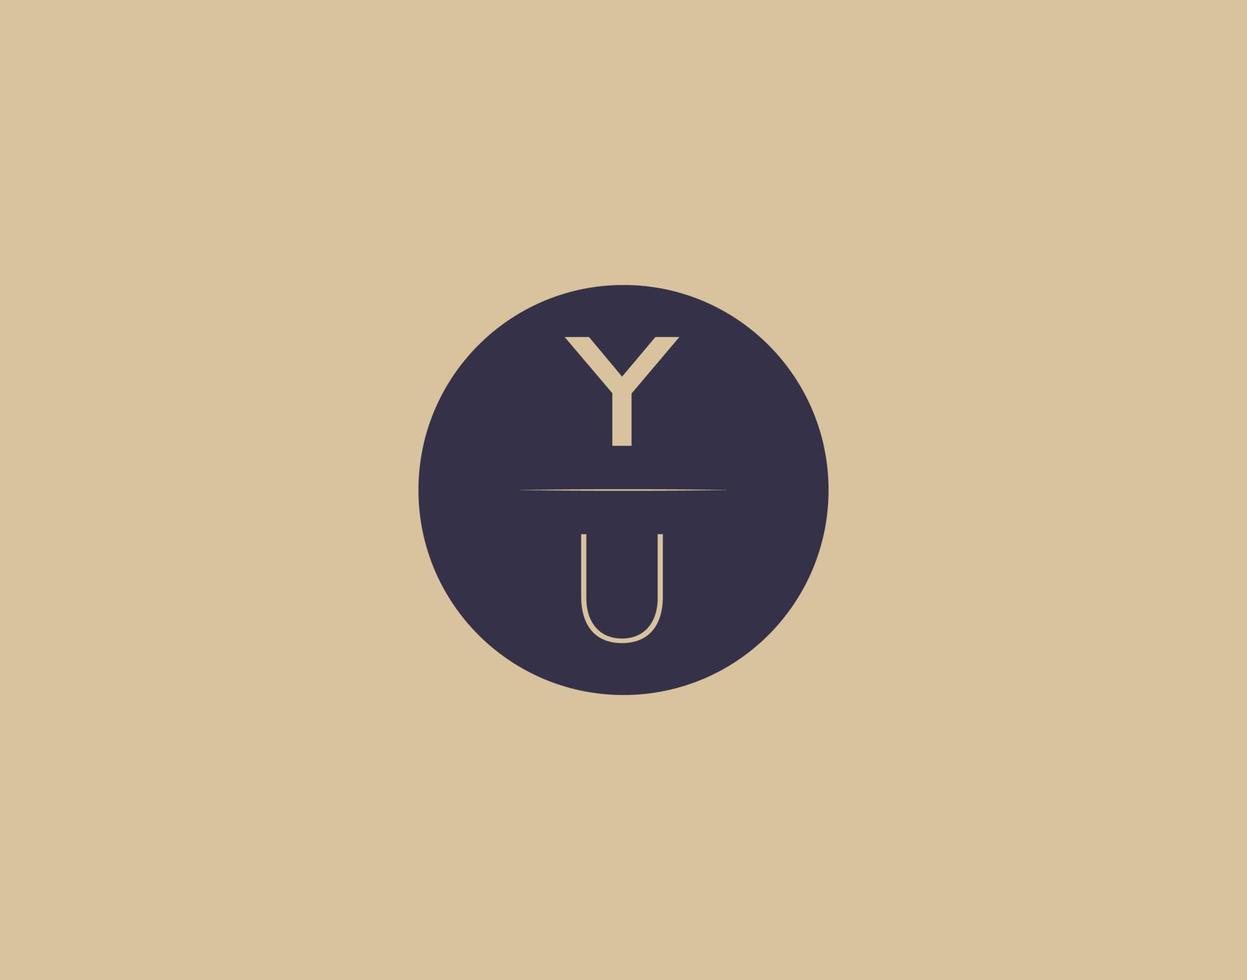 YU letter modern elegant logo design vector images